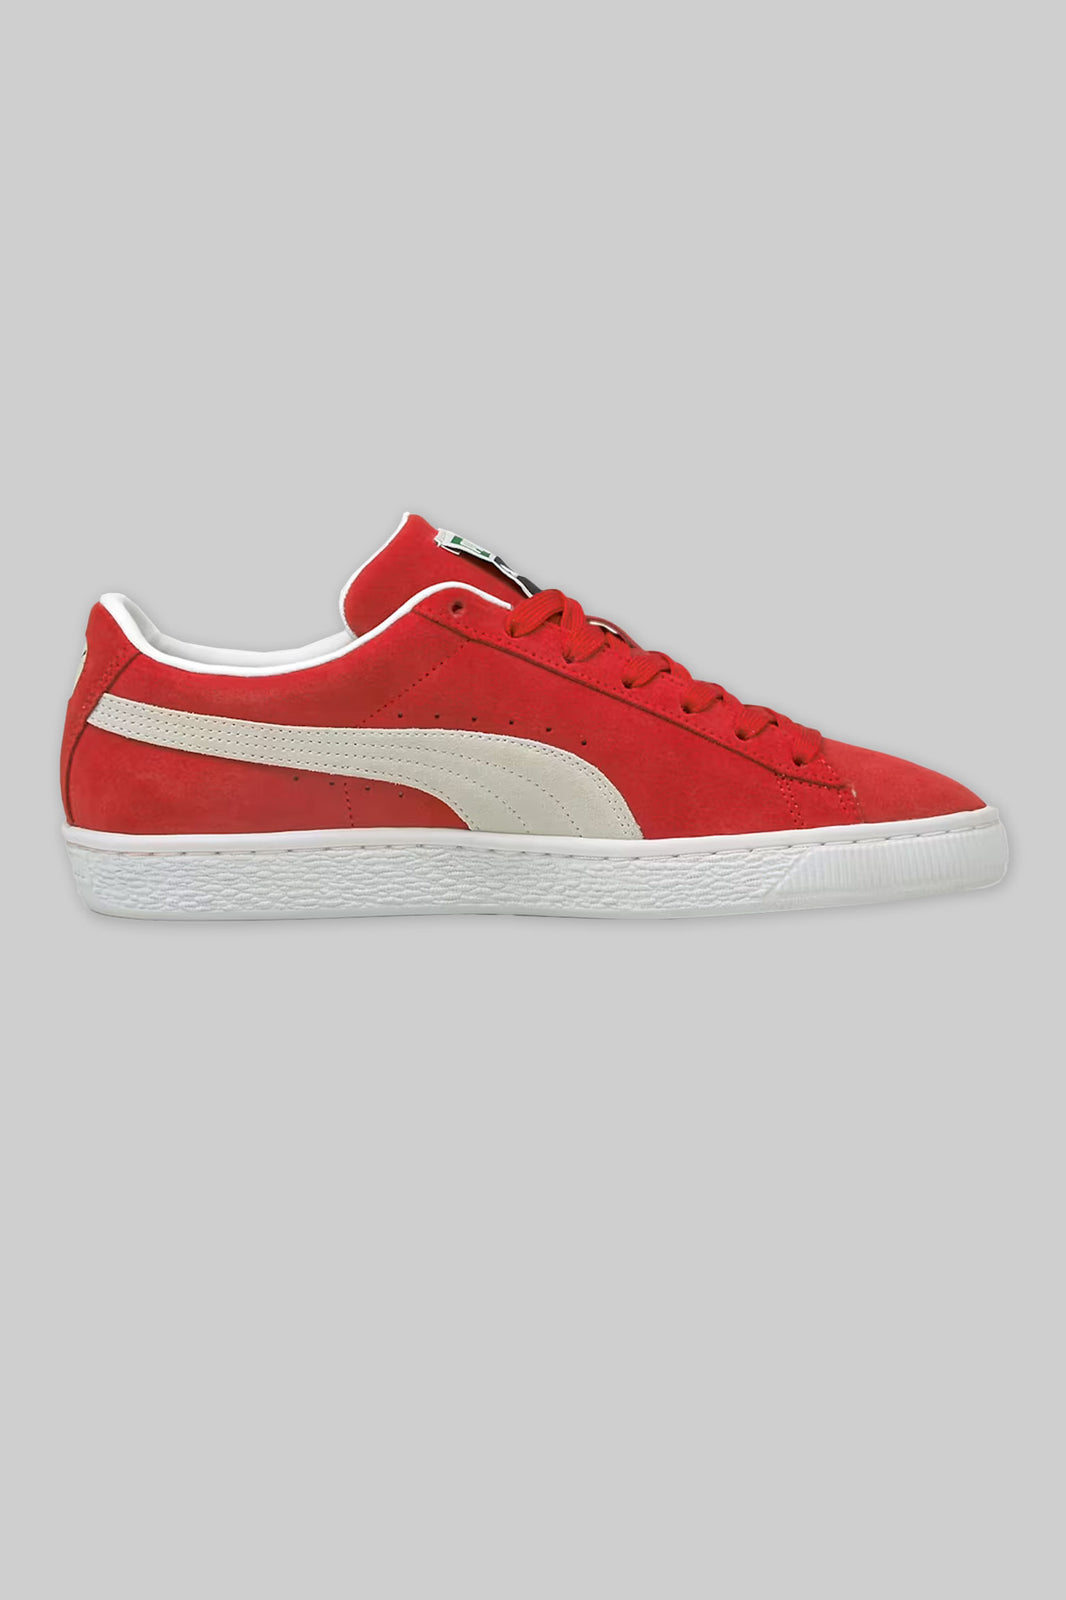 Puma Suede Vintage (Red/White)